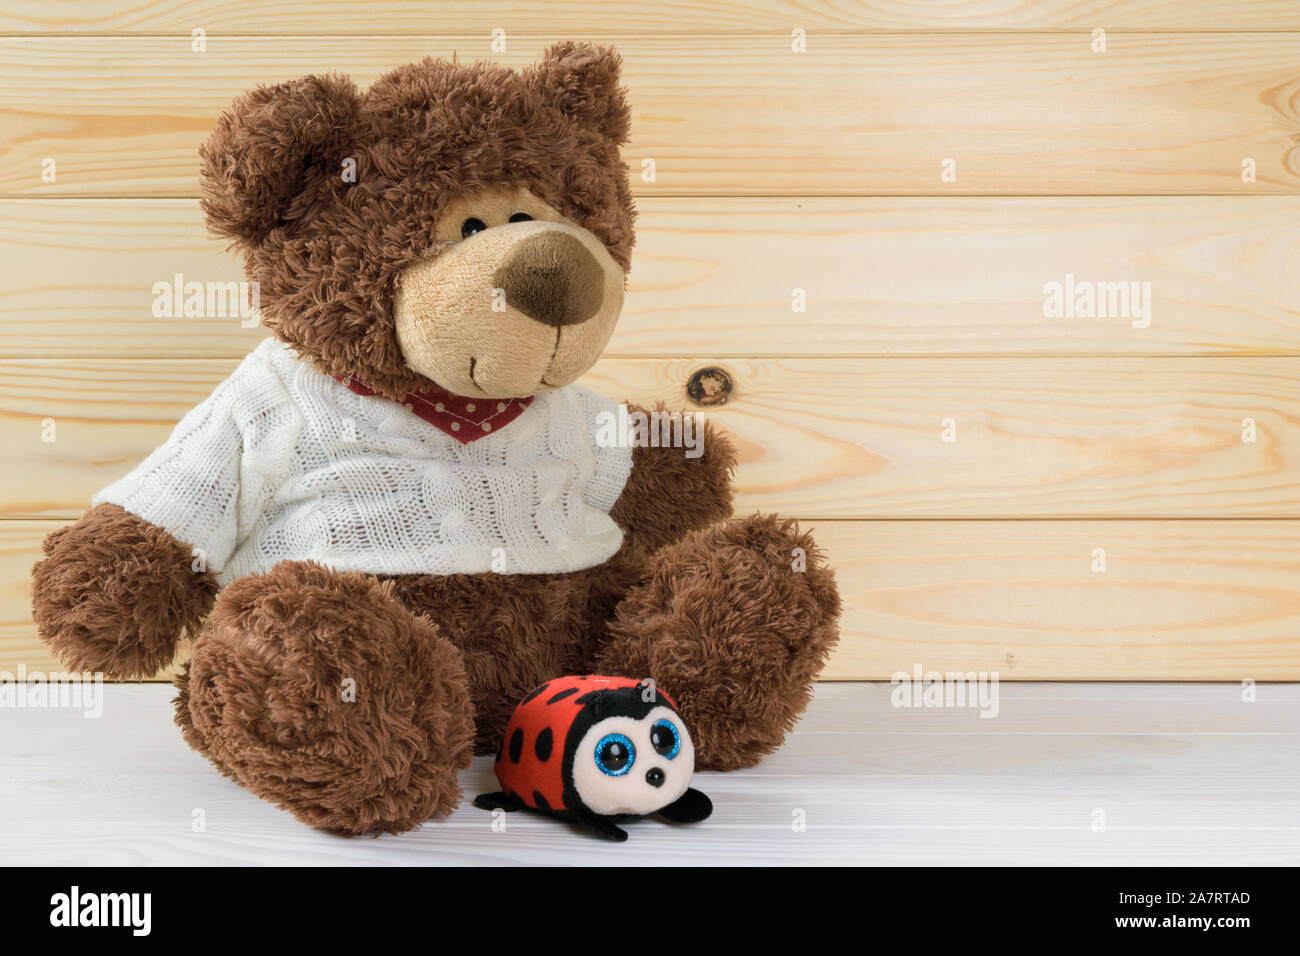 Jouet ours en peluche brun est assis sur une table en bois blanc sur fond de planches en bois Banque D'Images